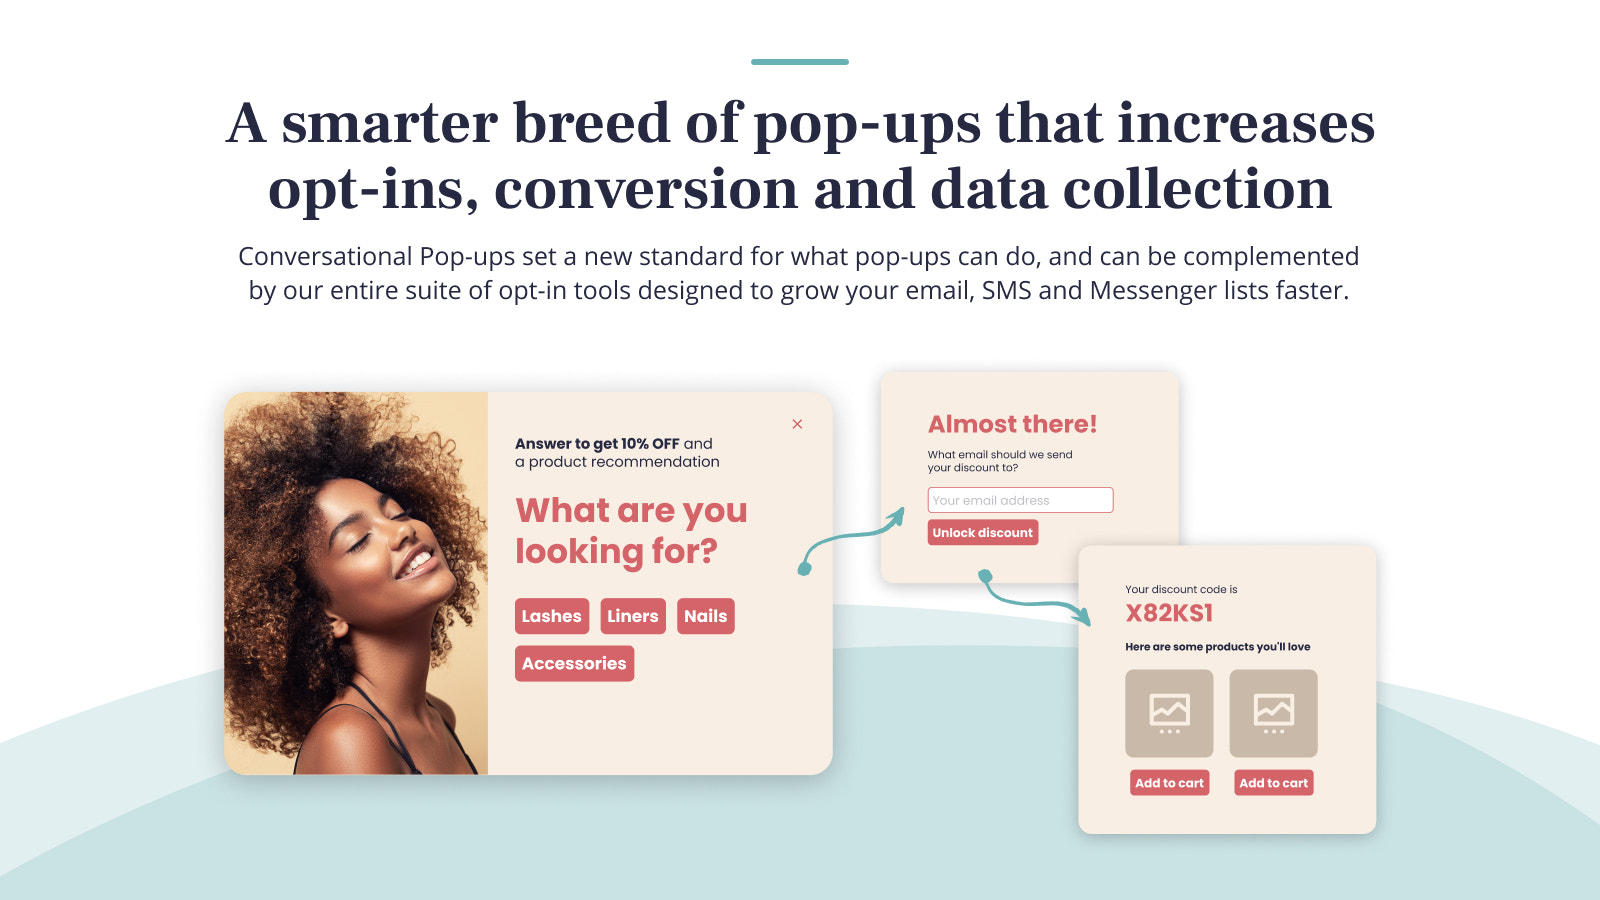 Los Pop-ups Conversacionales son la nueva forma de recopilar datos y opt-ins